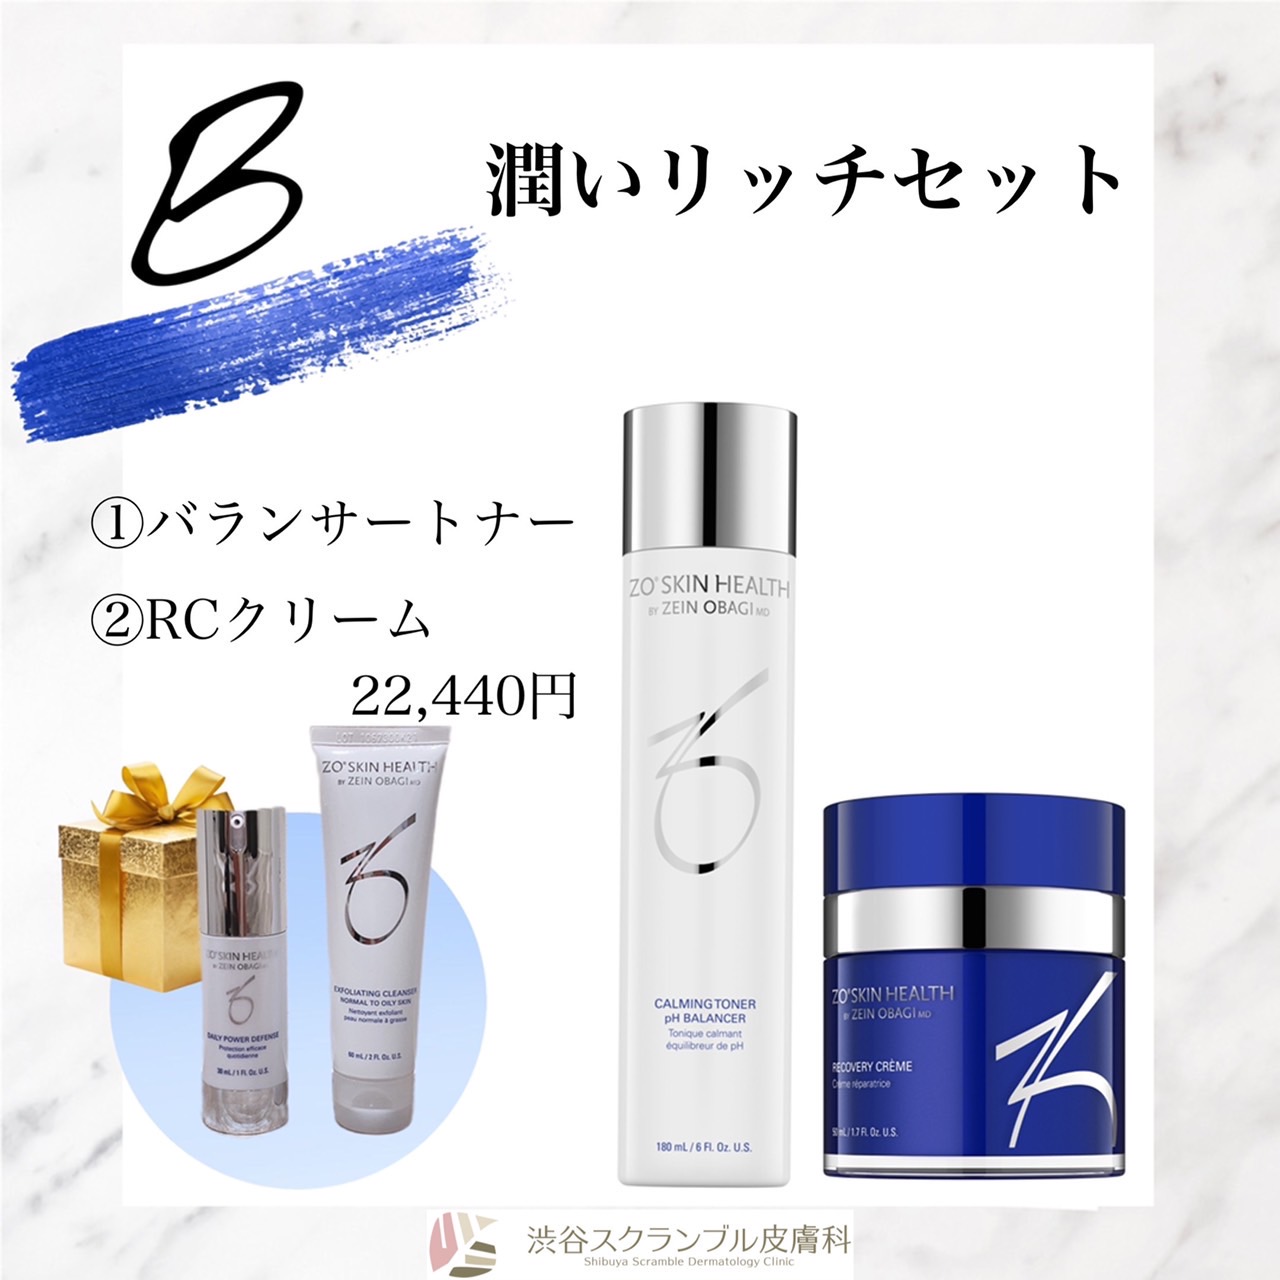 ゼオスキン サマーキャンペーンのお知らせ | 渋谷スクランブル皮膚科